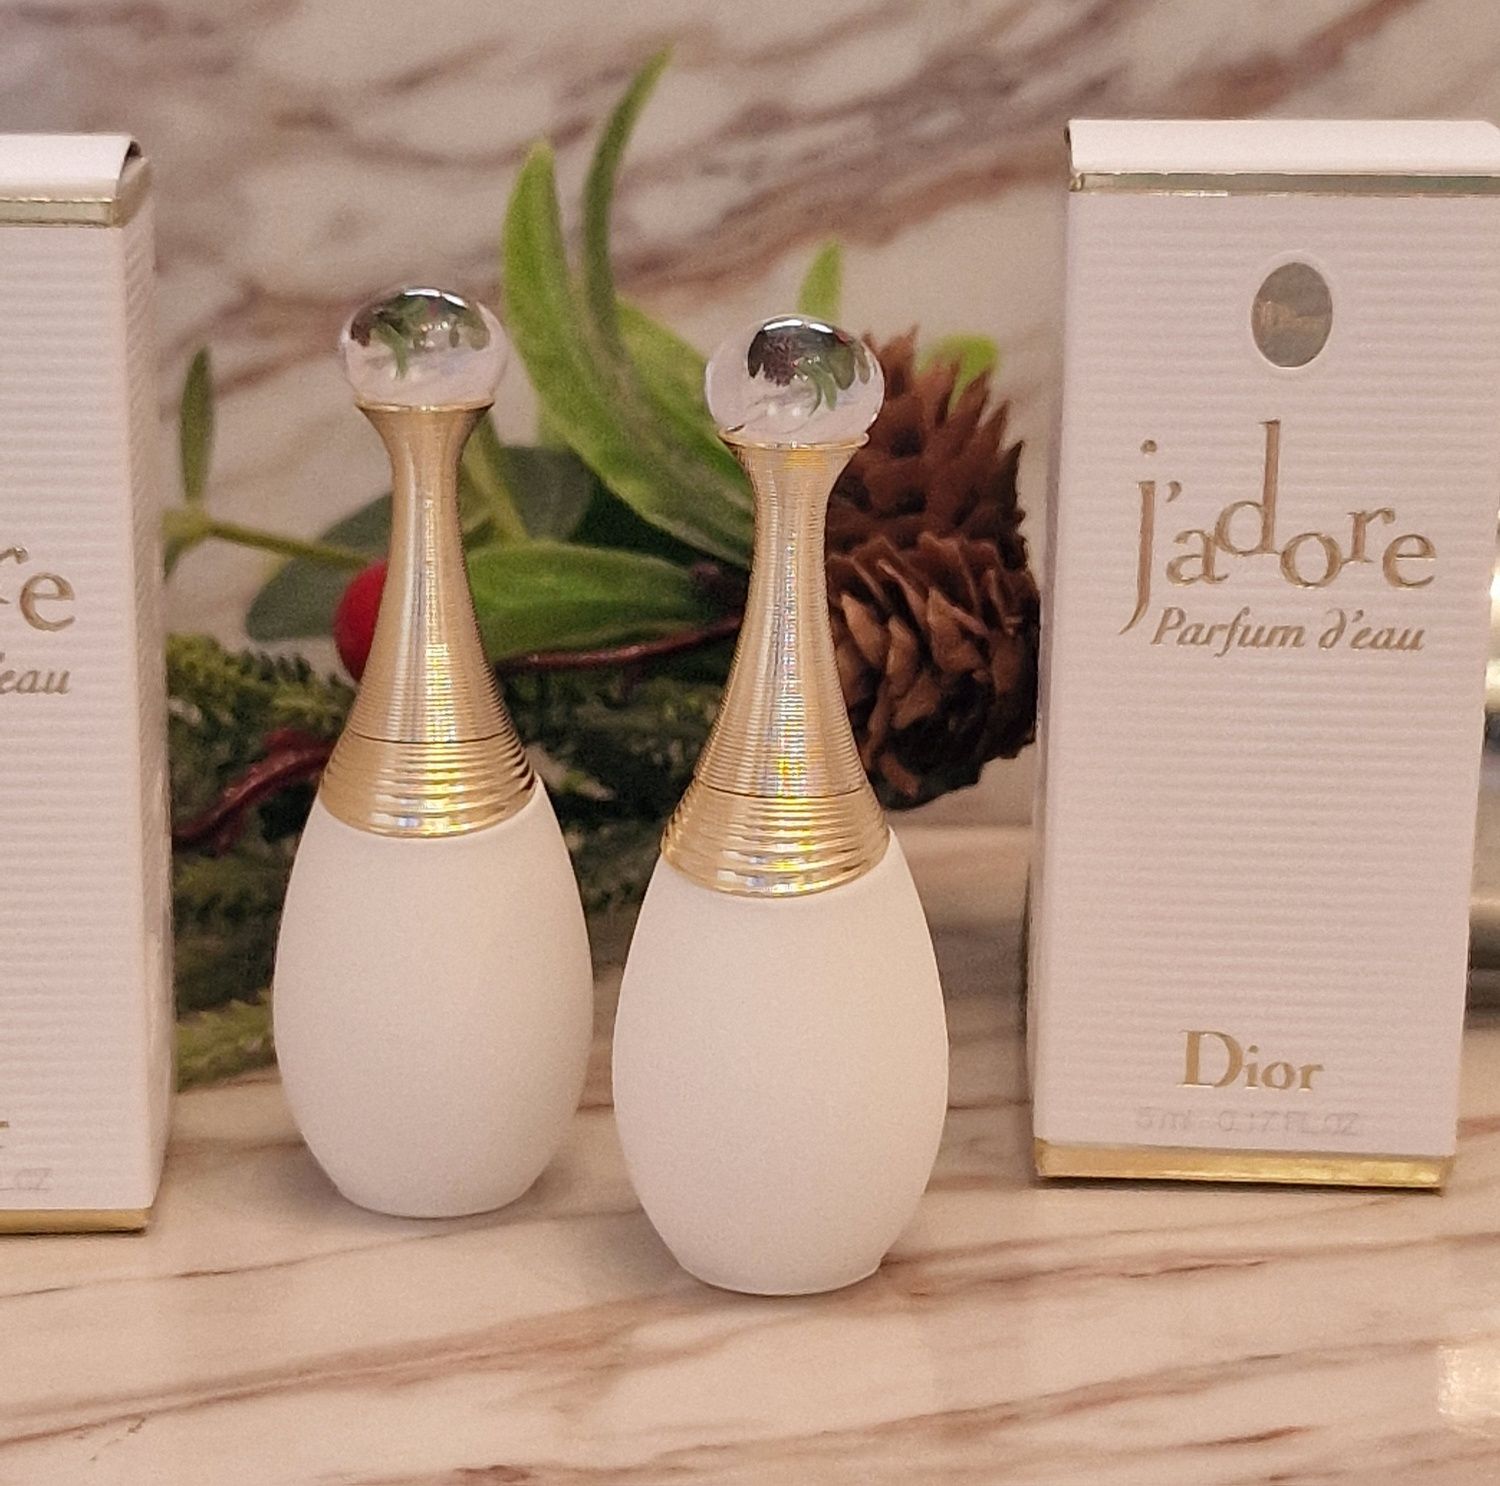 Dior Jadore Parfum d'eau 5 ml miniaturka